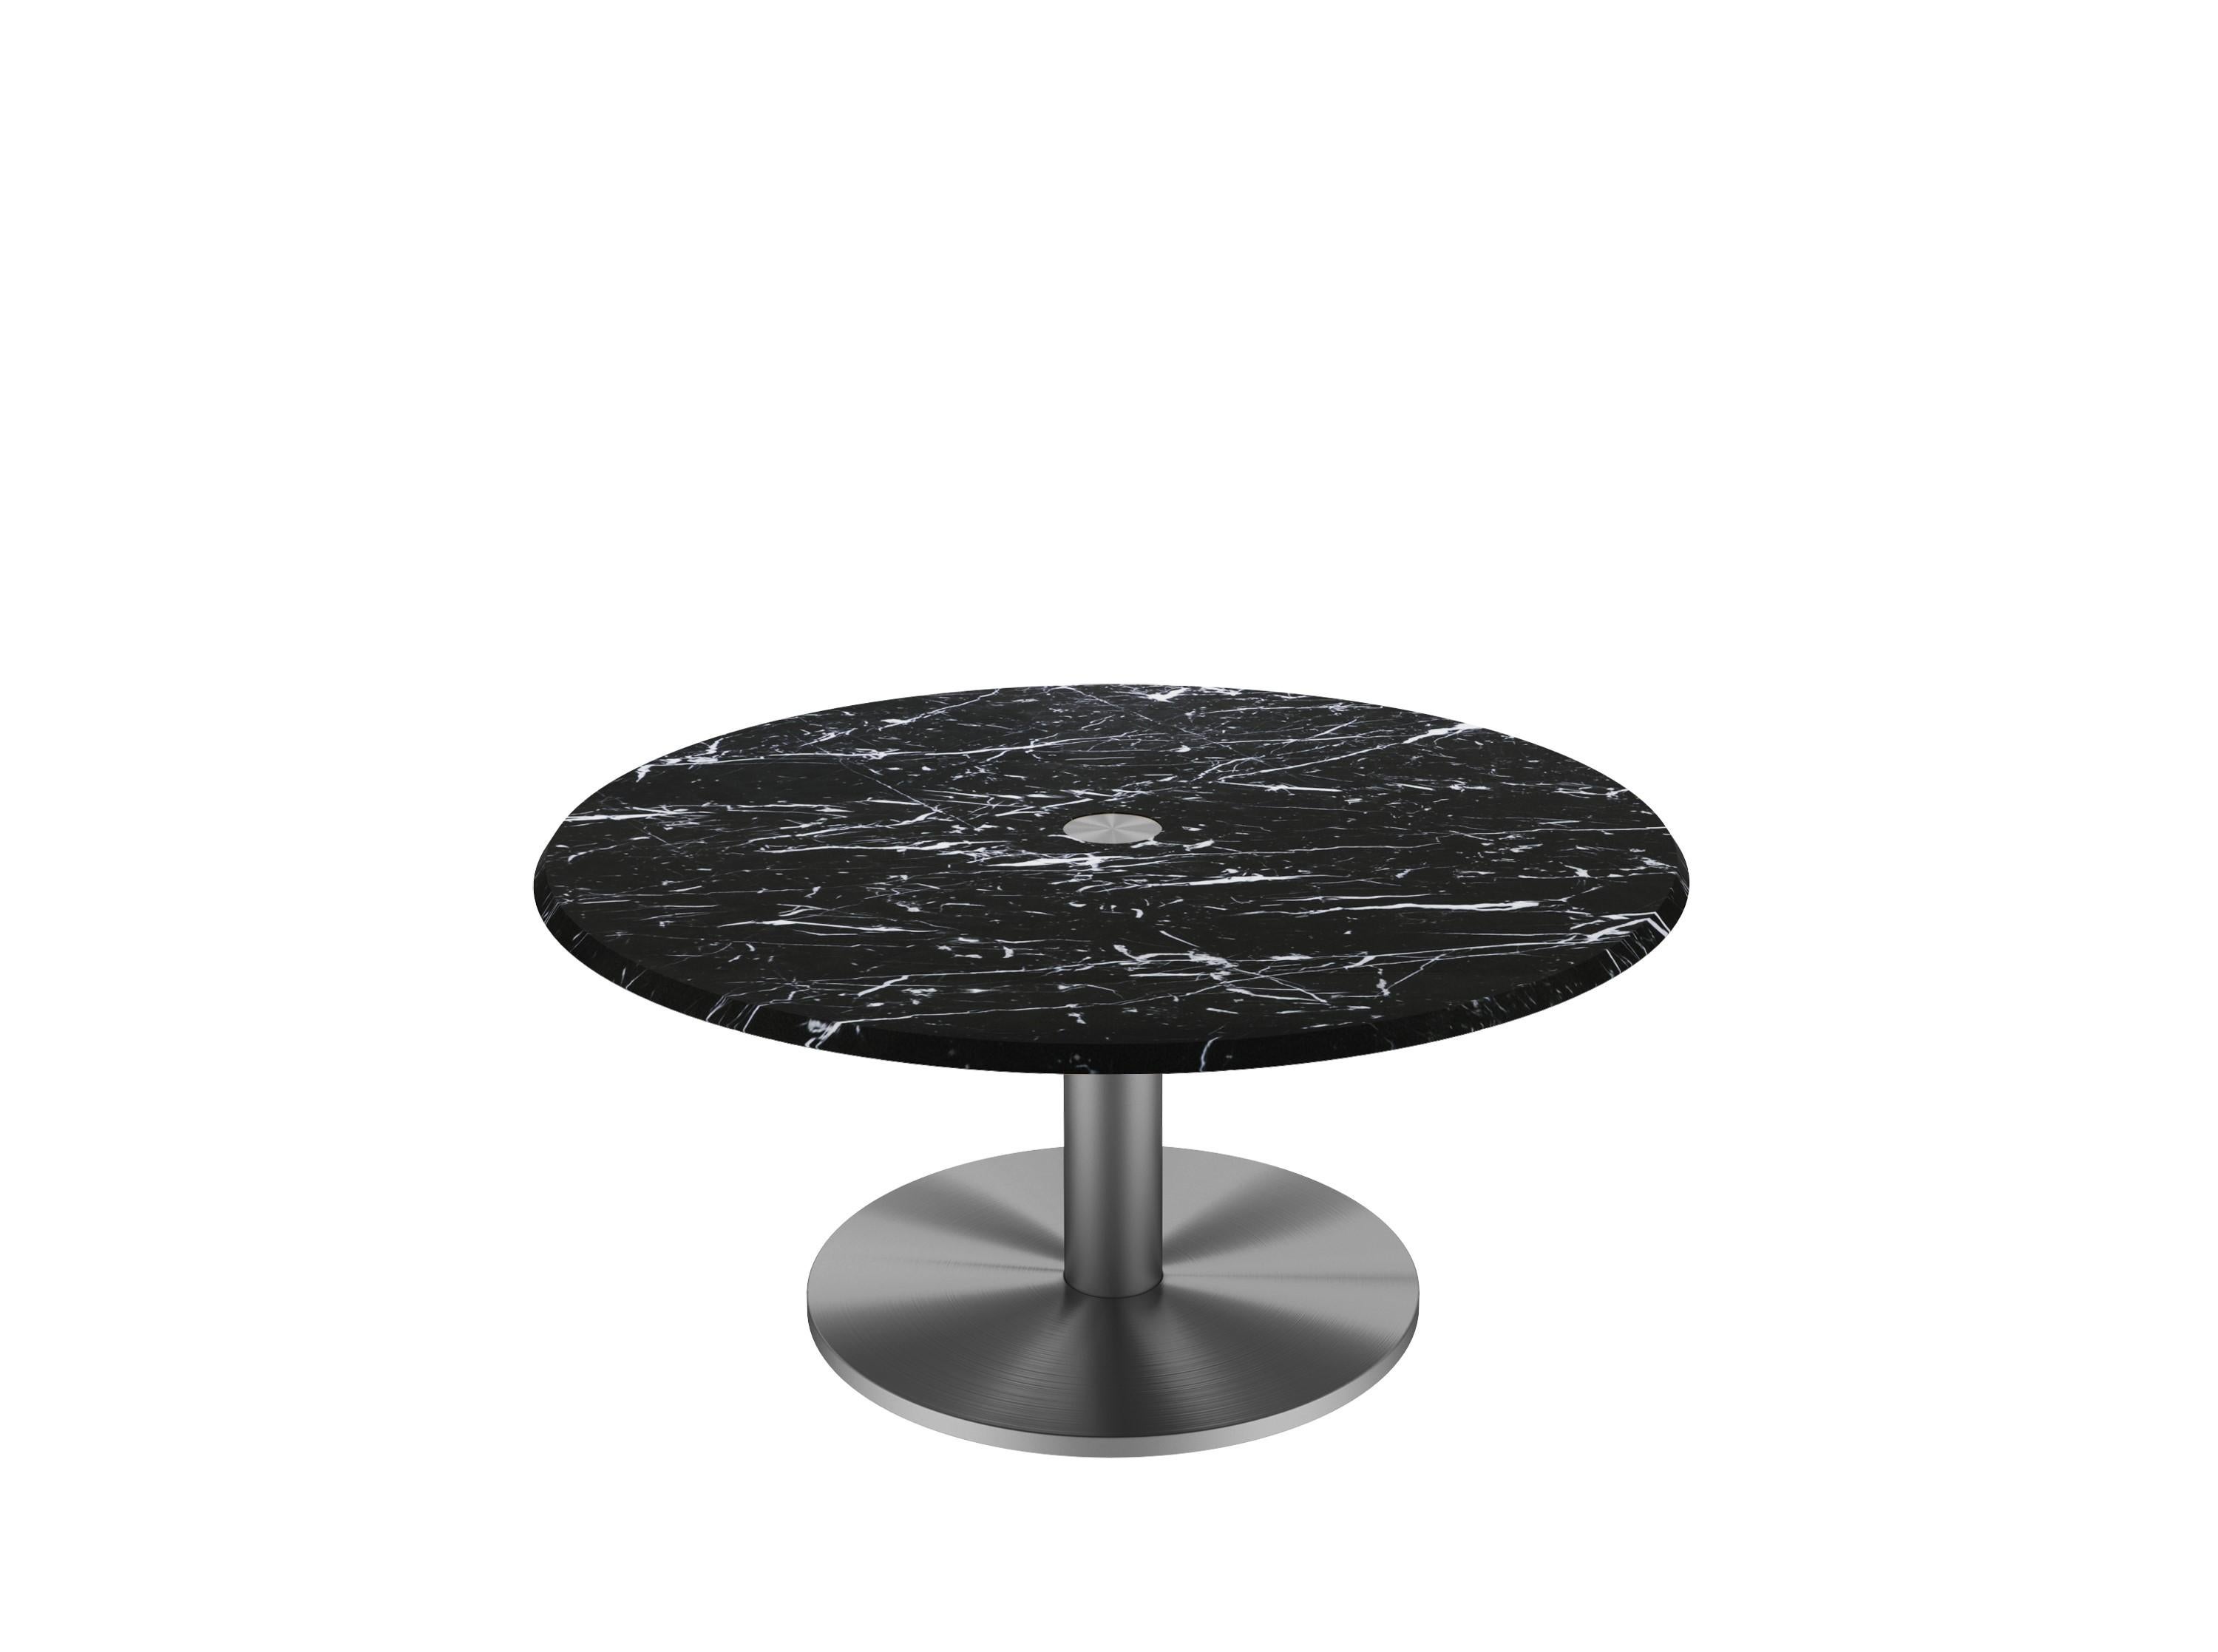 𝗣𝗿𝗼𝗱𝘂𝗰𝘁 𝗗𝗲𝘁𝗮𝗶𝗹𝘀 :
Magnifique table basse ronde avec un cadre à colonne cylindrique unique traversant le plateau de marbre pour exposer le travail de métal joliment réalisé sur la surface ; en outre, le fond peut être doté d'une pièce